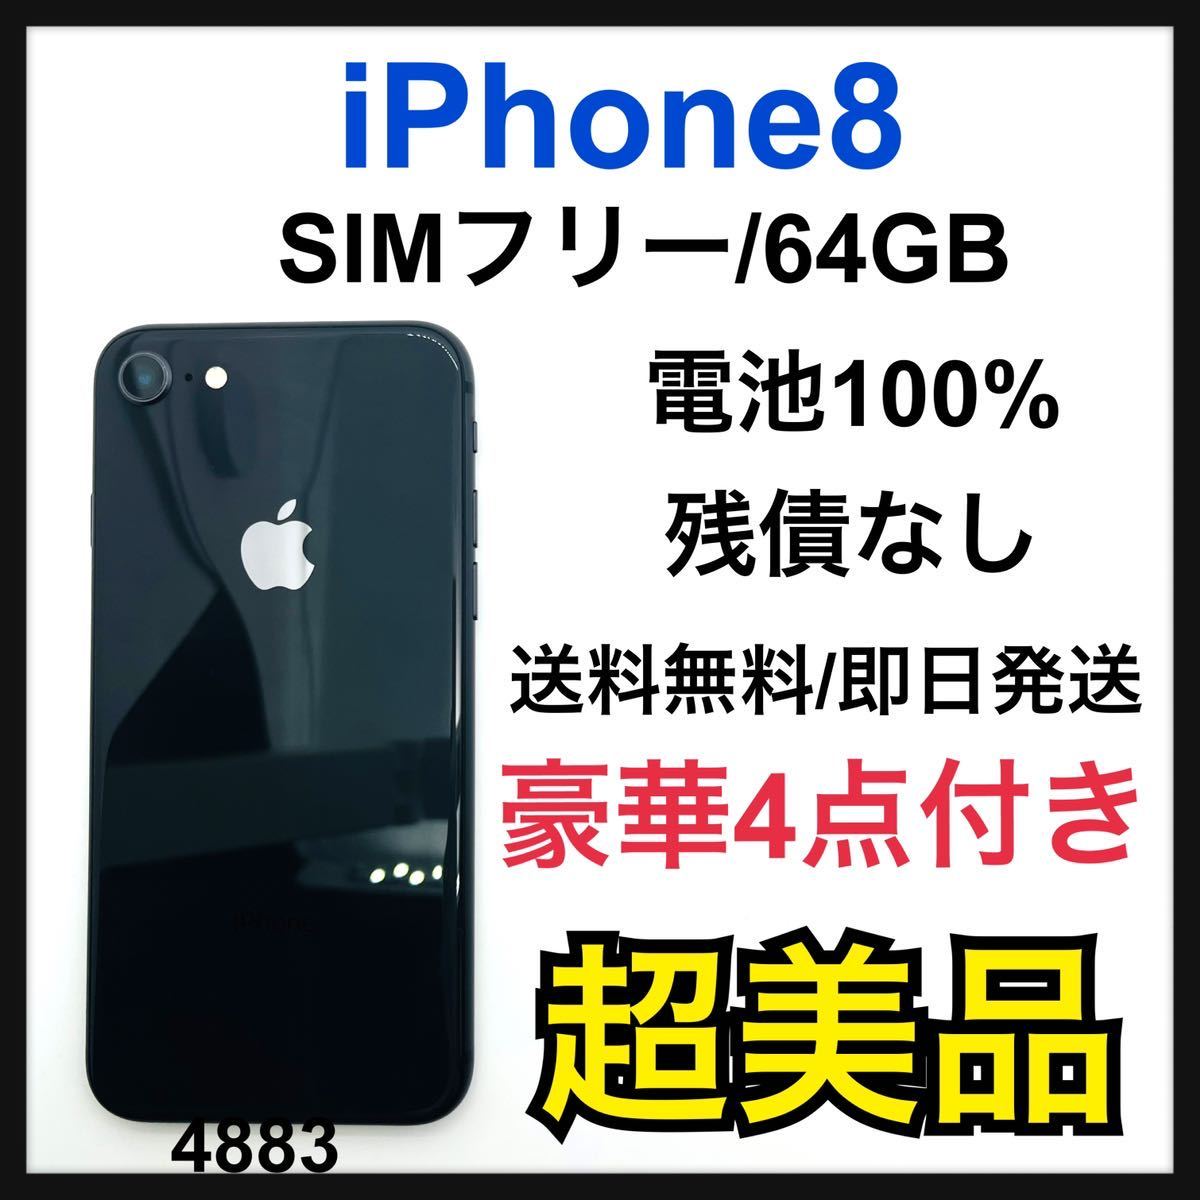 贈り物 S 100% iPhone 8 スペースグレイ 64 GB SIMフリー 本体 iPhone